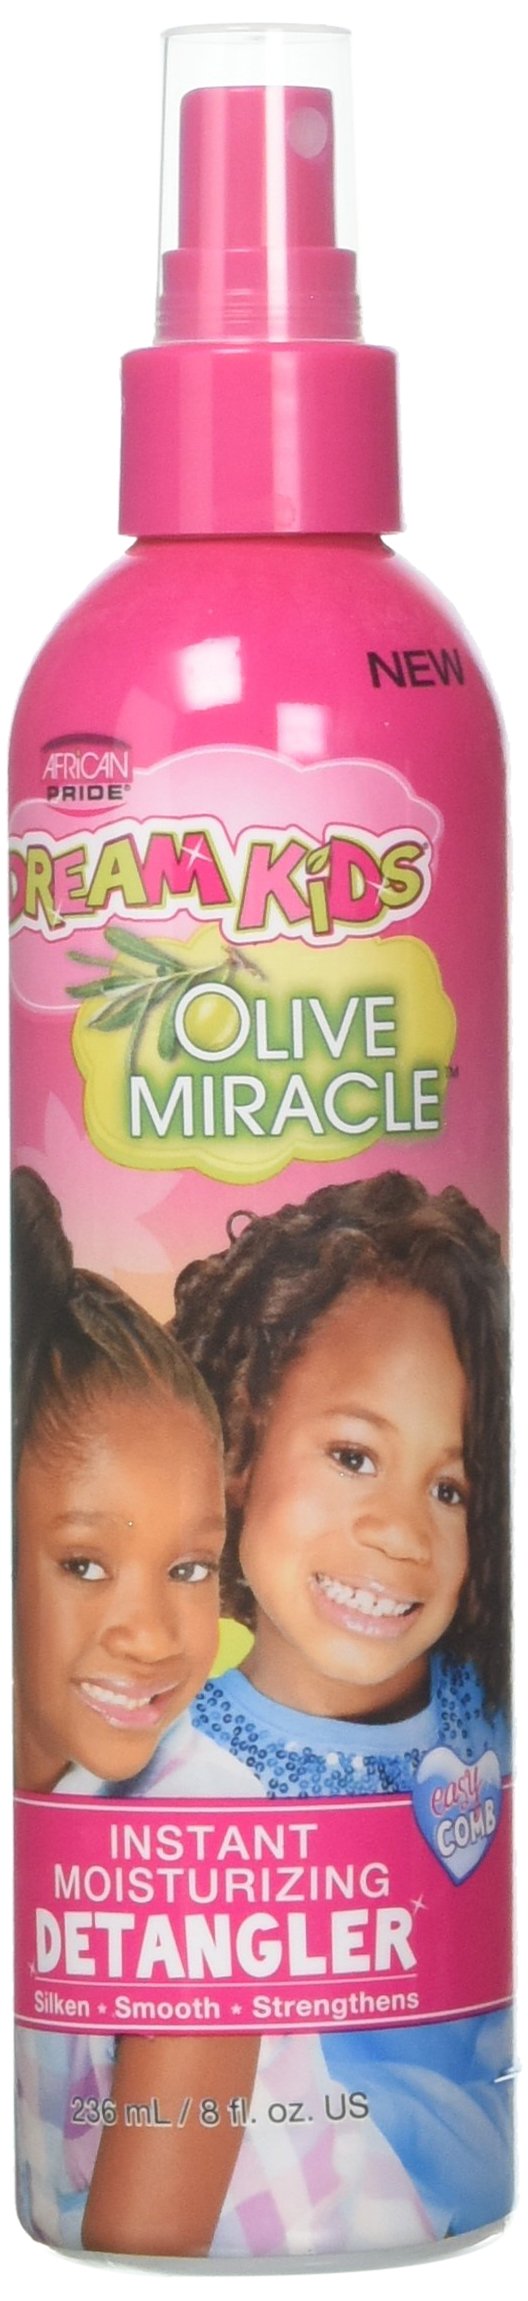 African Pride Dream Kids Olive Miracle Instant Moisturizing Detangler 236 ml